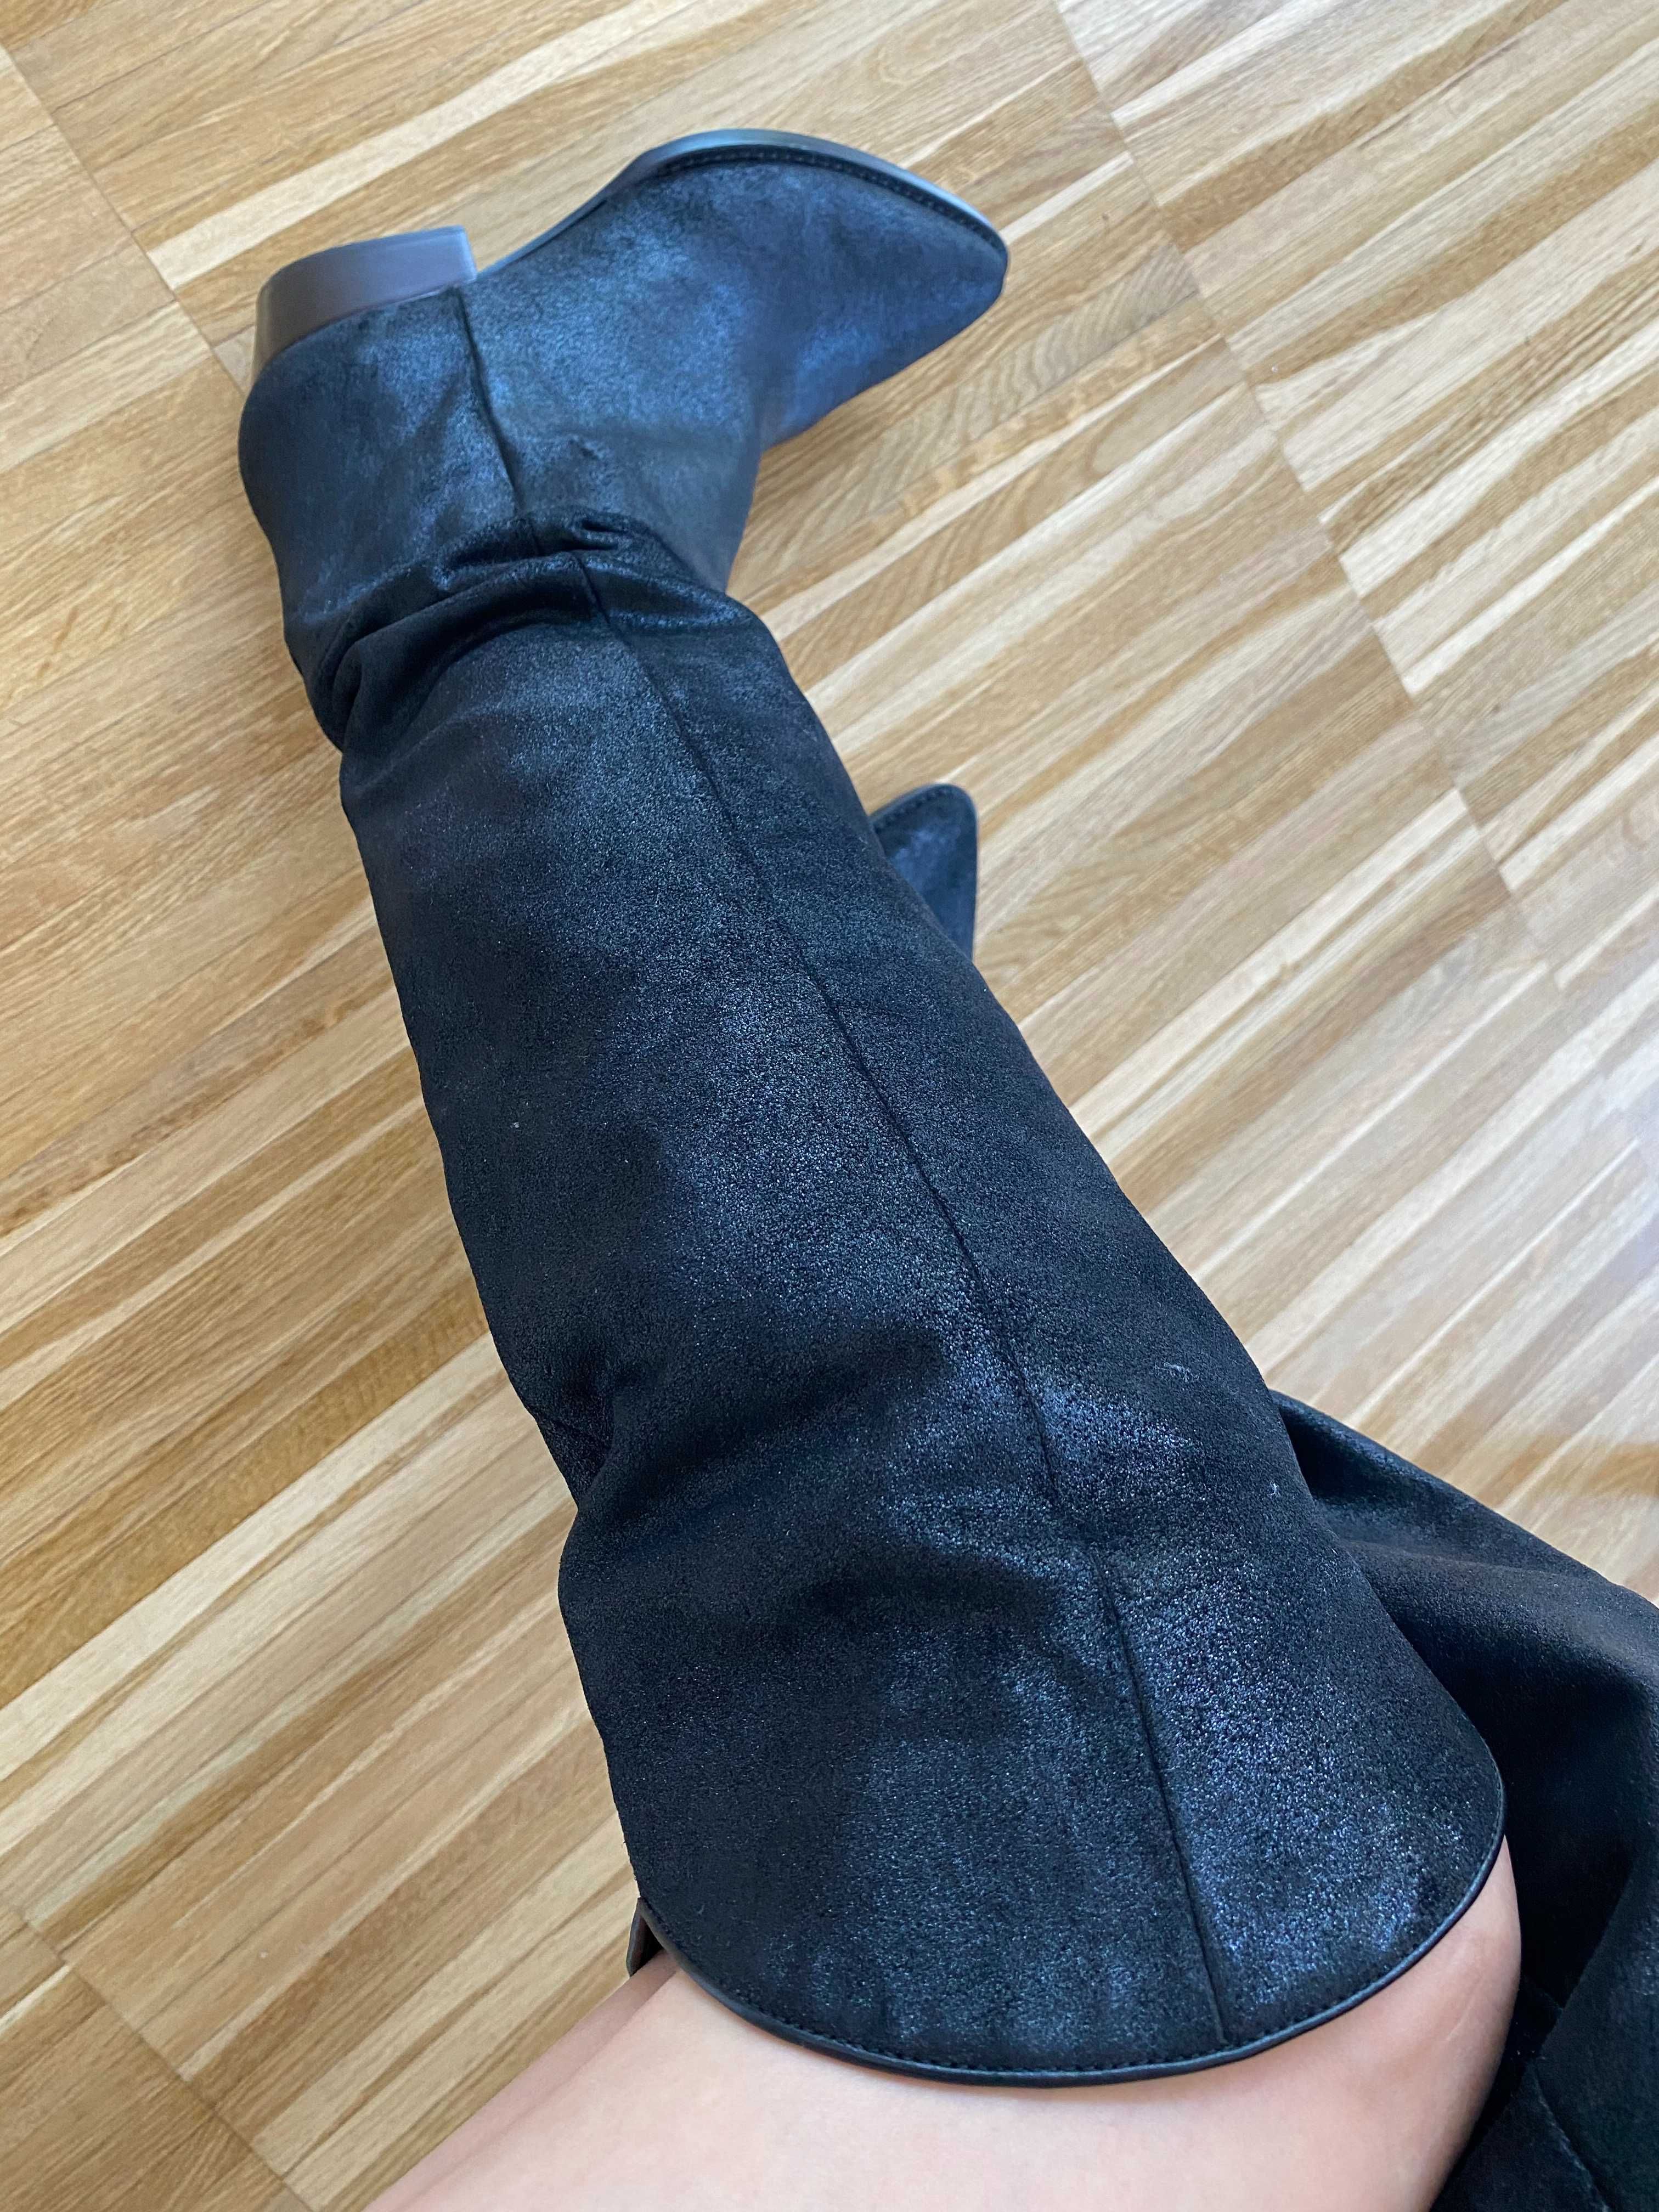 Musette - Cizme cowboy boots - din piele intoarsa, neagra sclipitoare